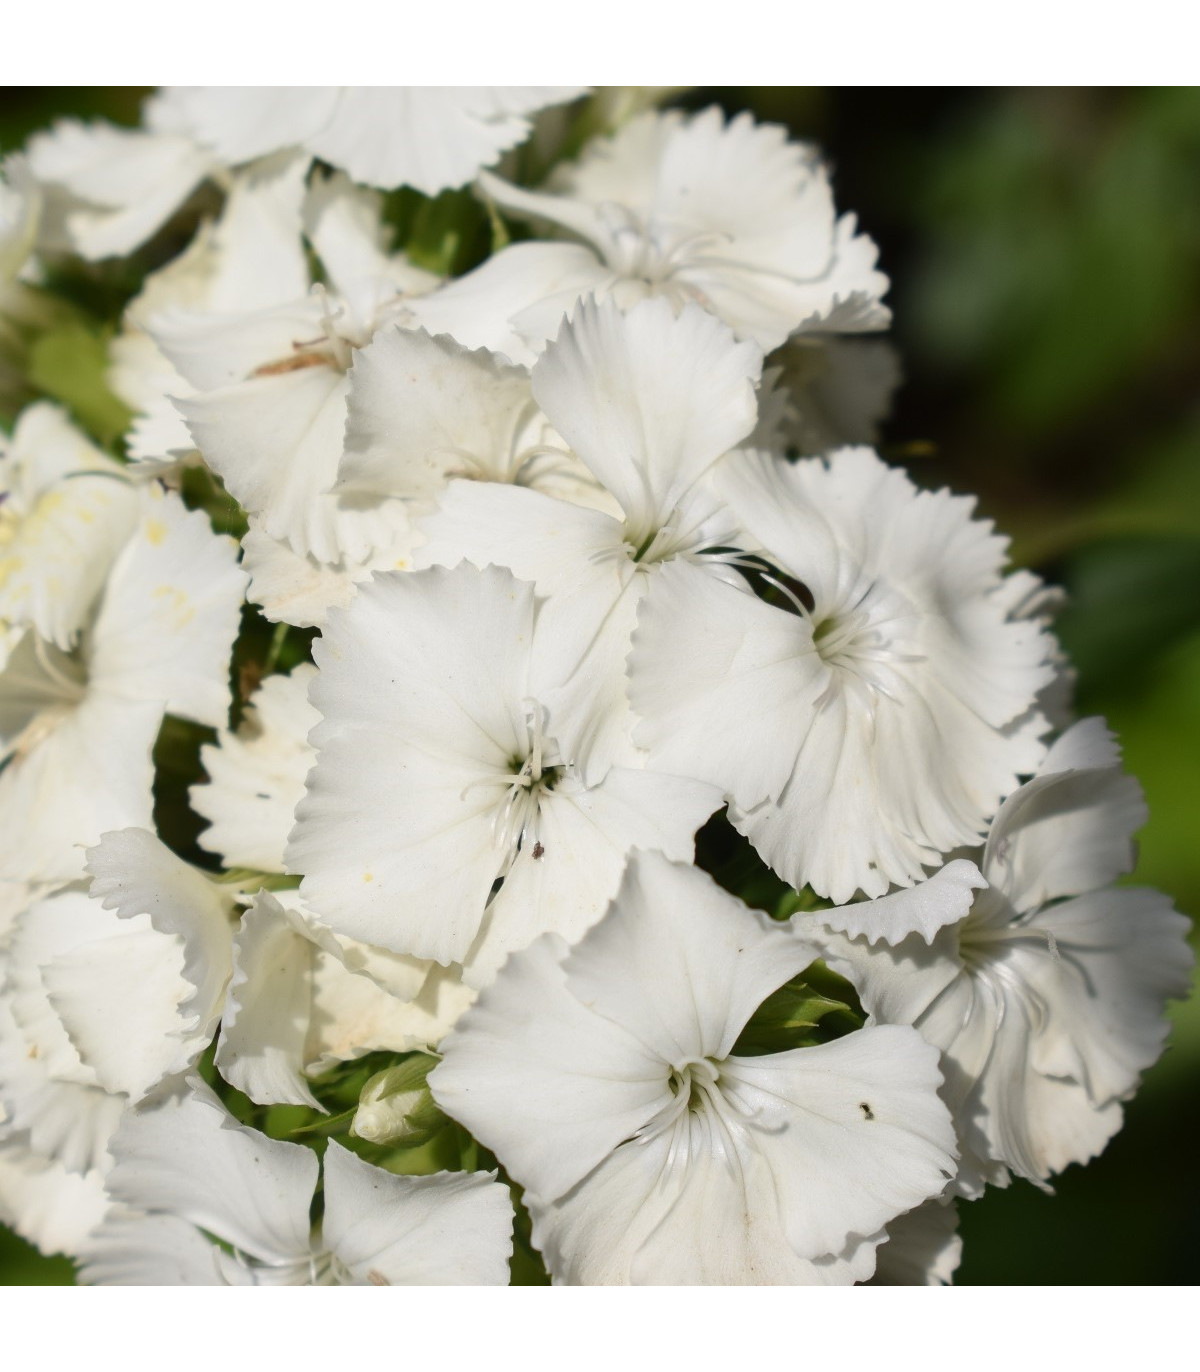 Klinček fúzatý Sweet William - Dianthus barbatus - semená klinčeka - 150 ks